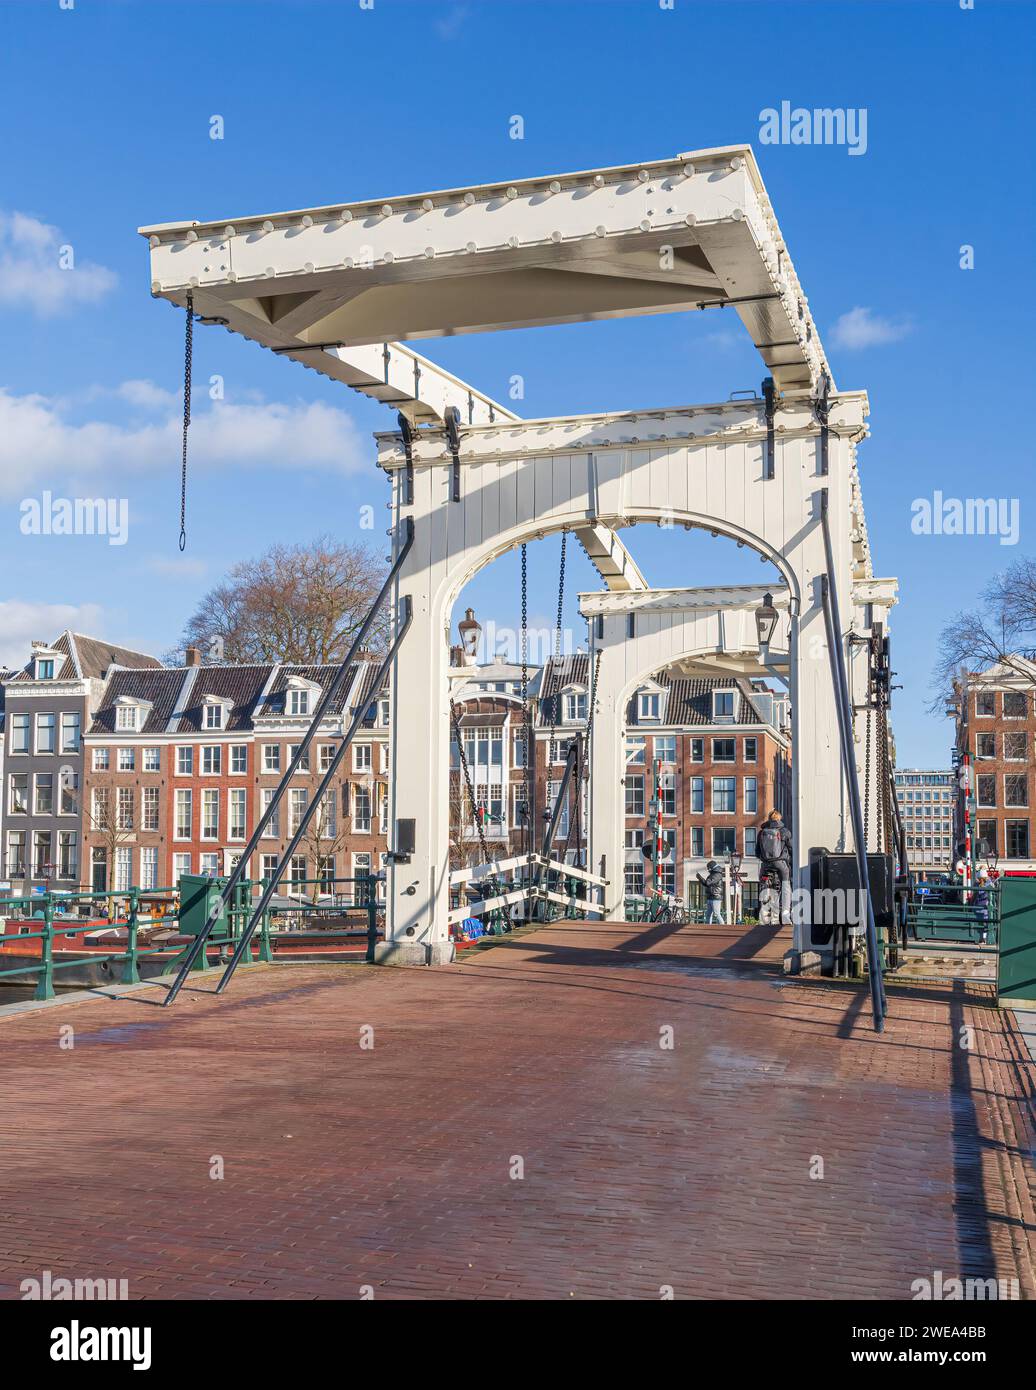 Magere Brug ou Skinny Bridge sur la rivière Amstel à Amsterdam aux pays-Bas Banque D'Images